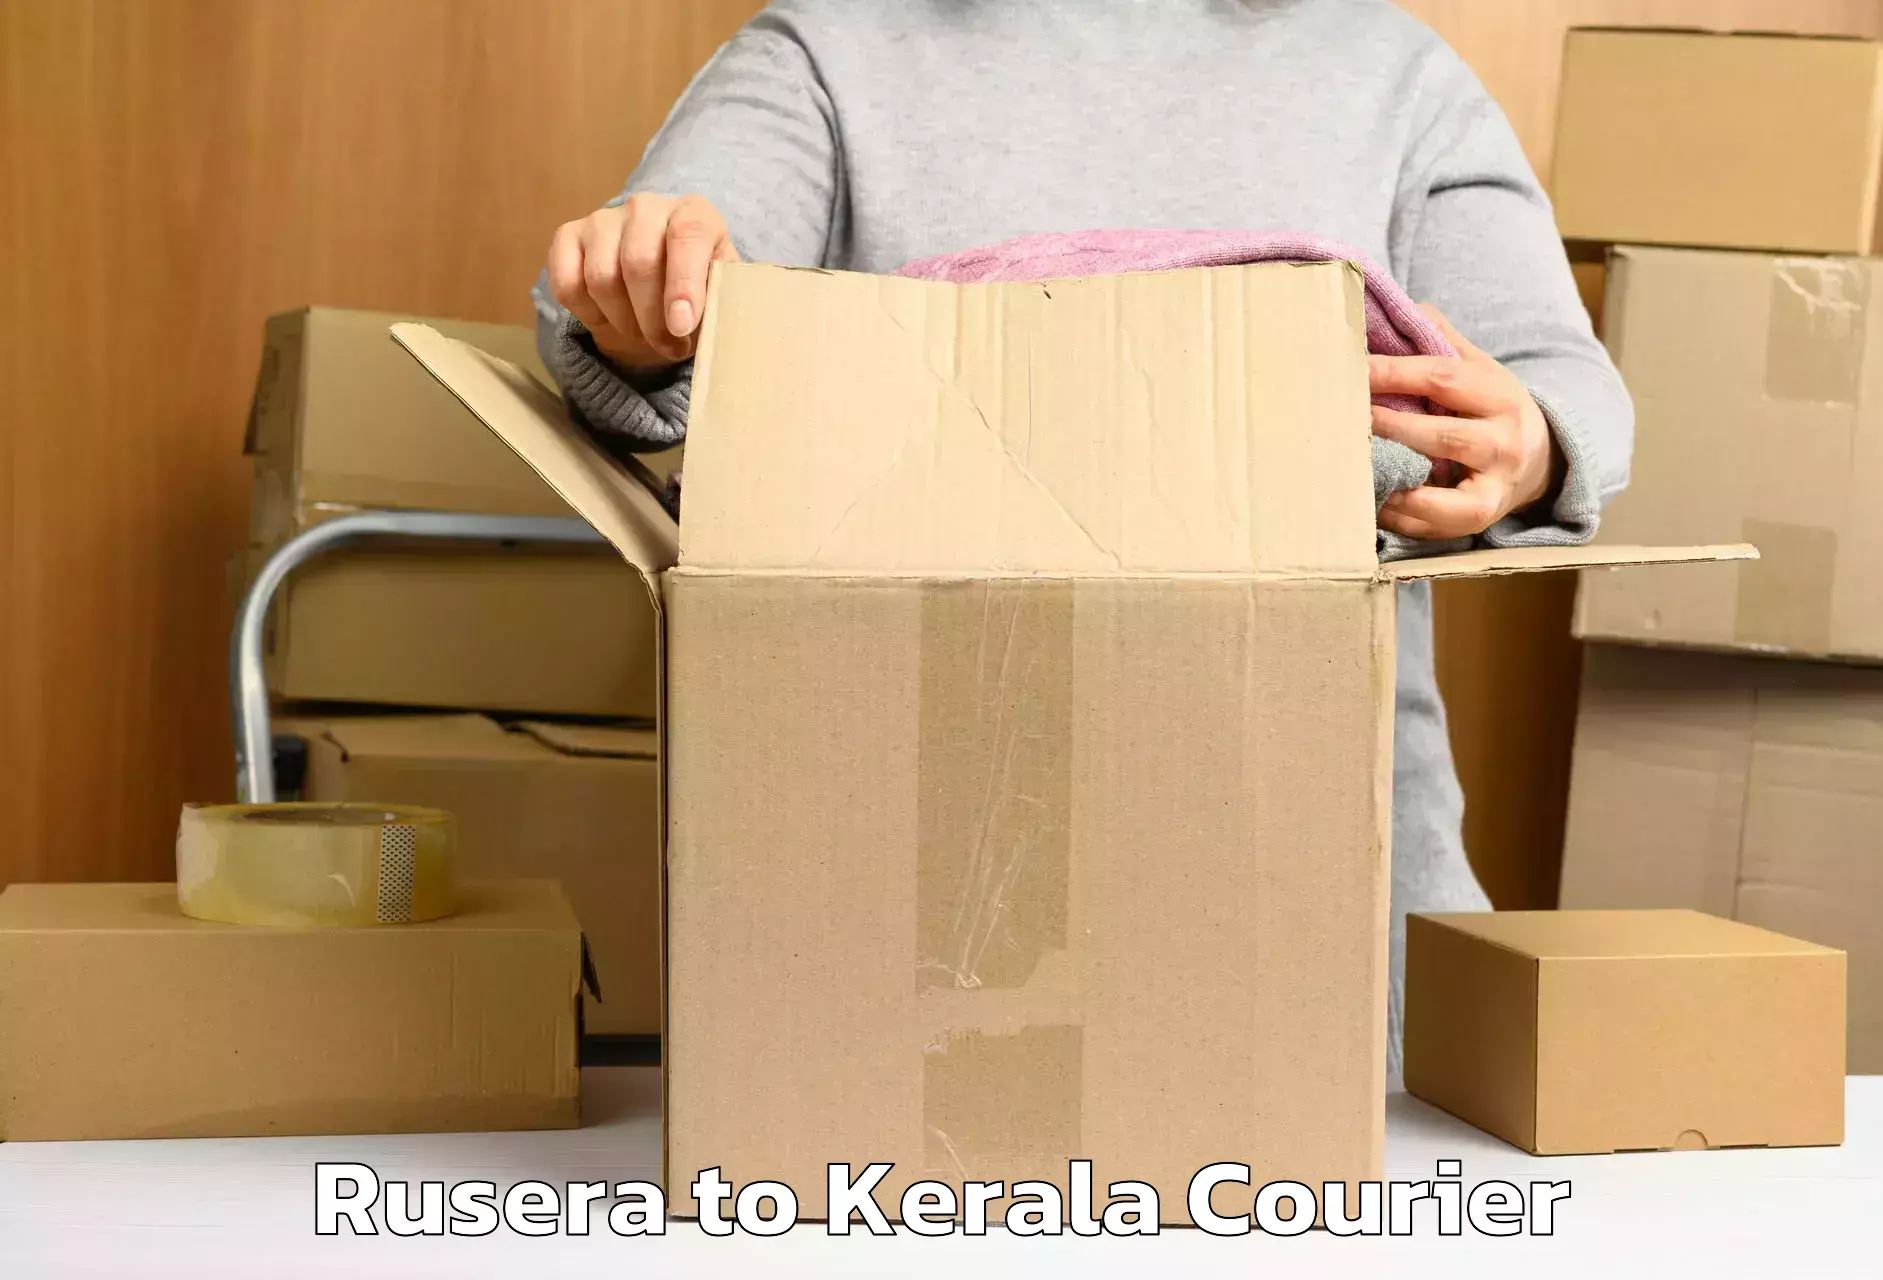 Luggage dispatch service Rusera to Kerala